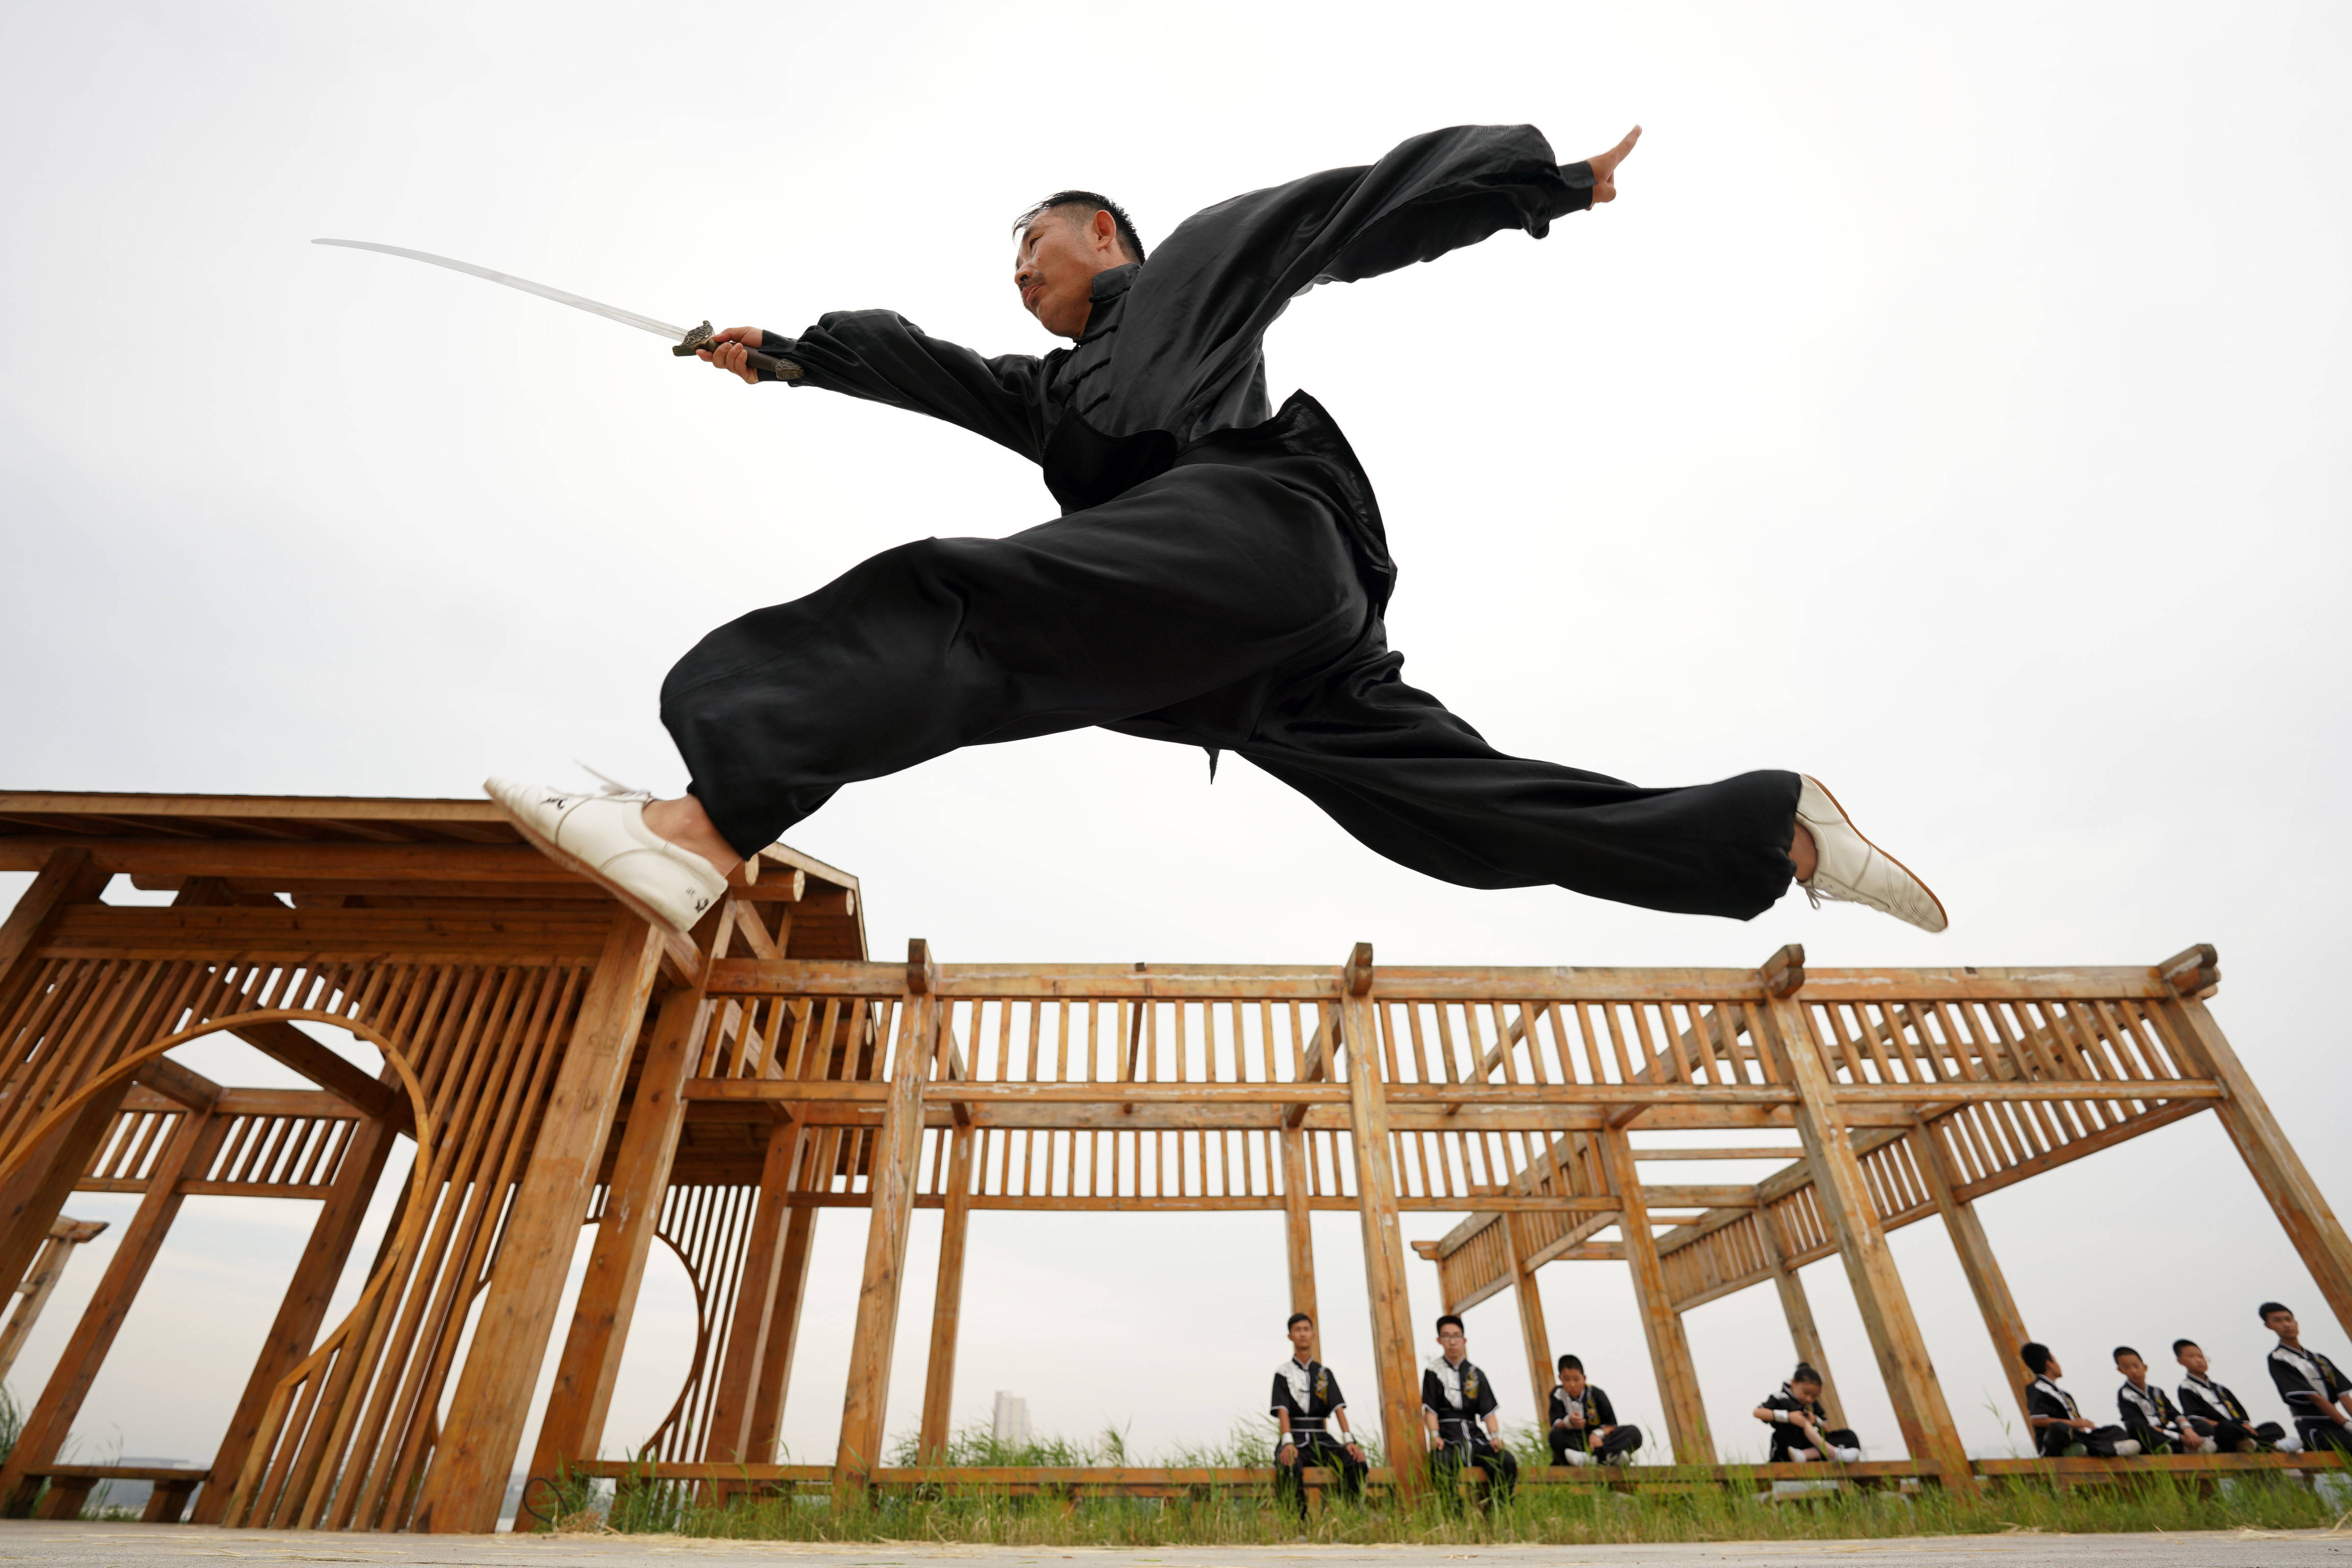 7月25日,在河北省南宫市南宫湖畔,武术爱好者练习"南宫开河少林散手通